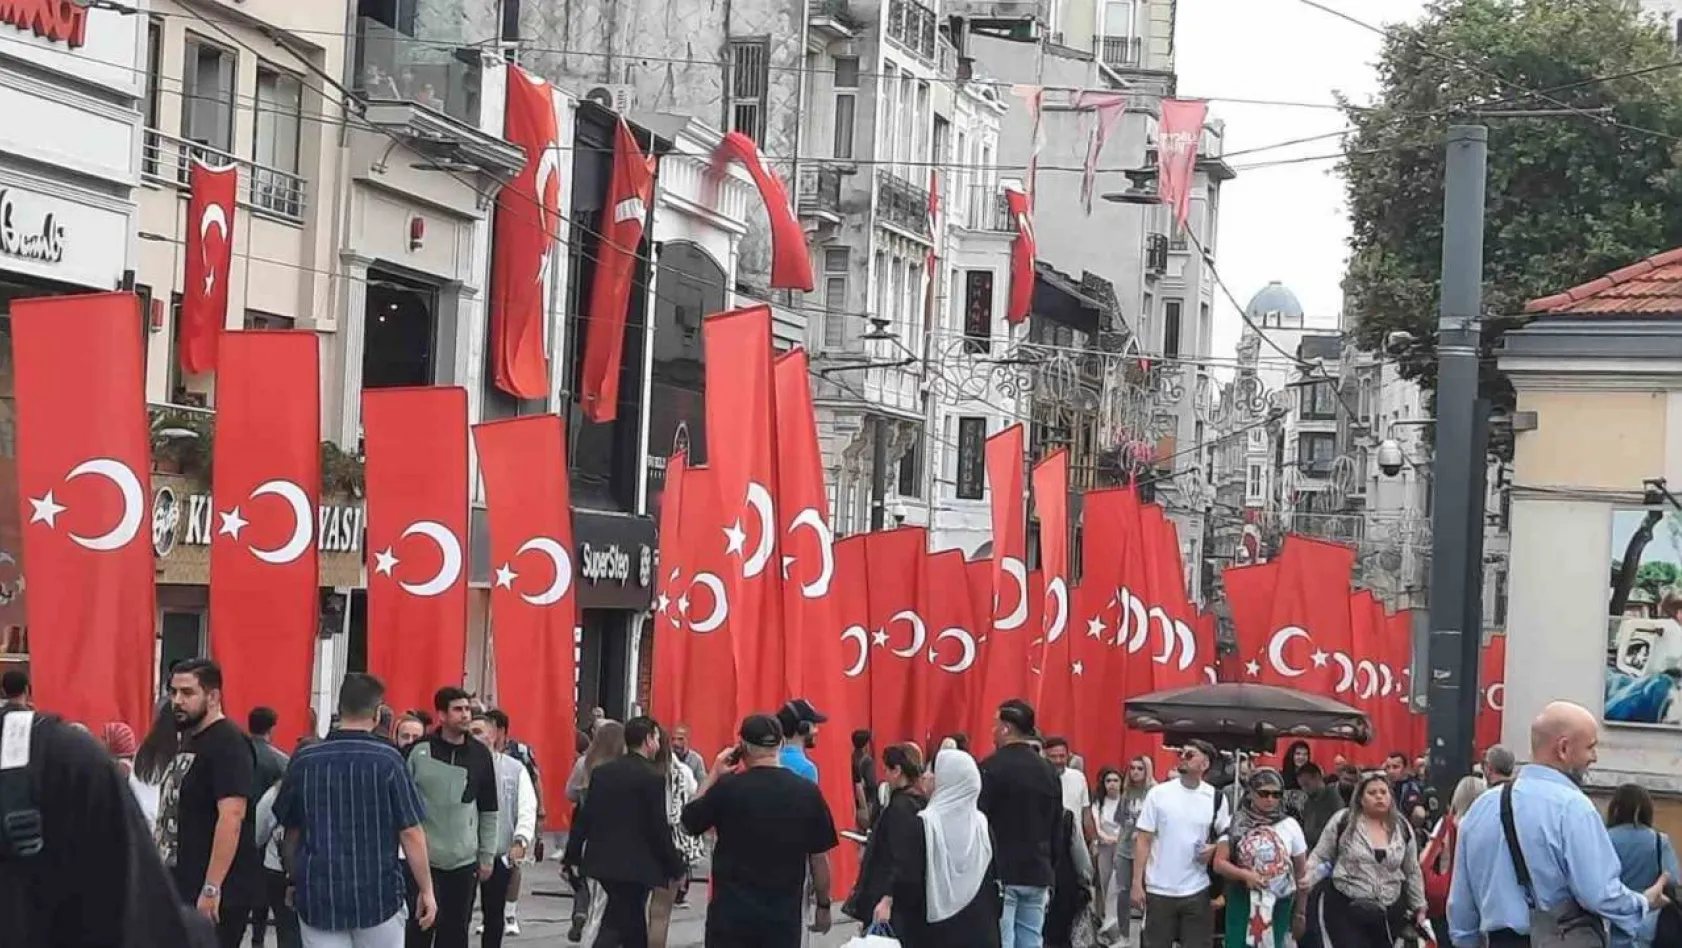 İstiklal Caddesi 100'üncü yıla özel Türk Bayraklarıyla donatıldı